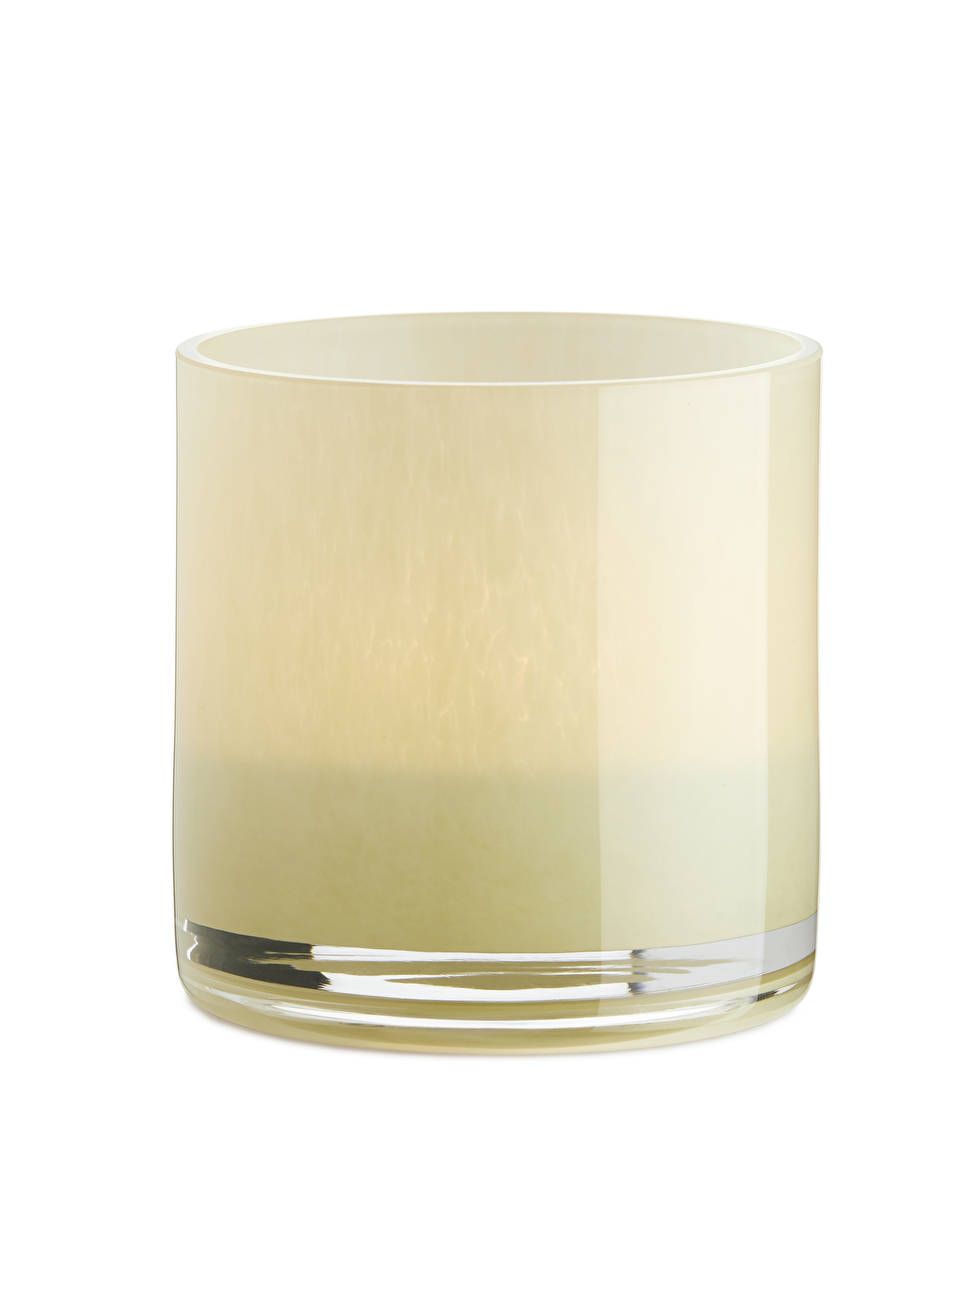 Glass Tea Light Holder 9 cm
				
				£12 | ARKET (US&UK)